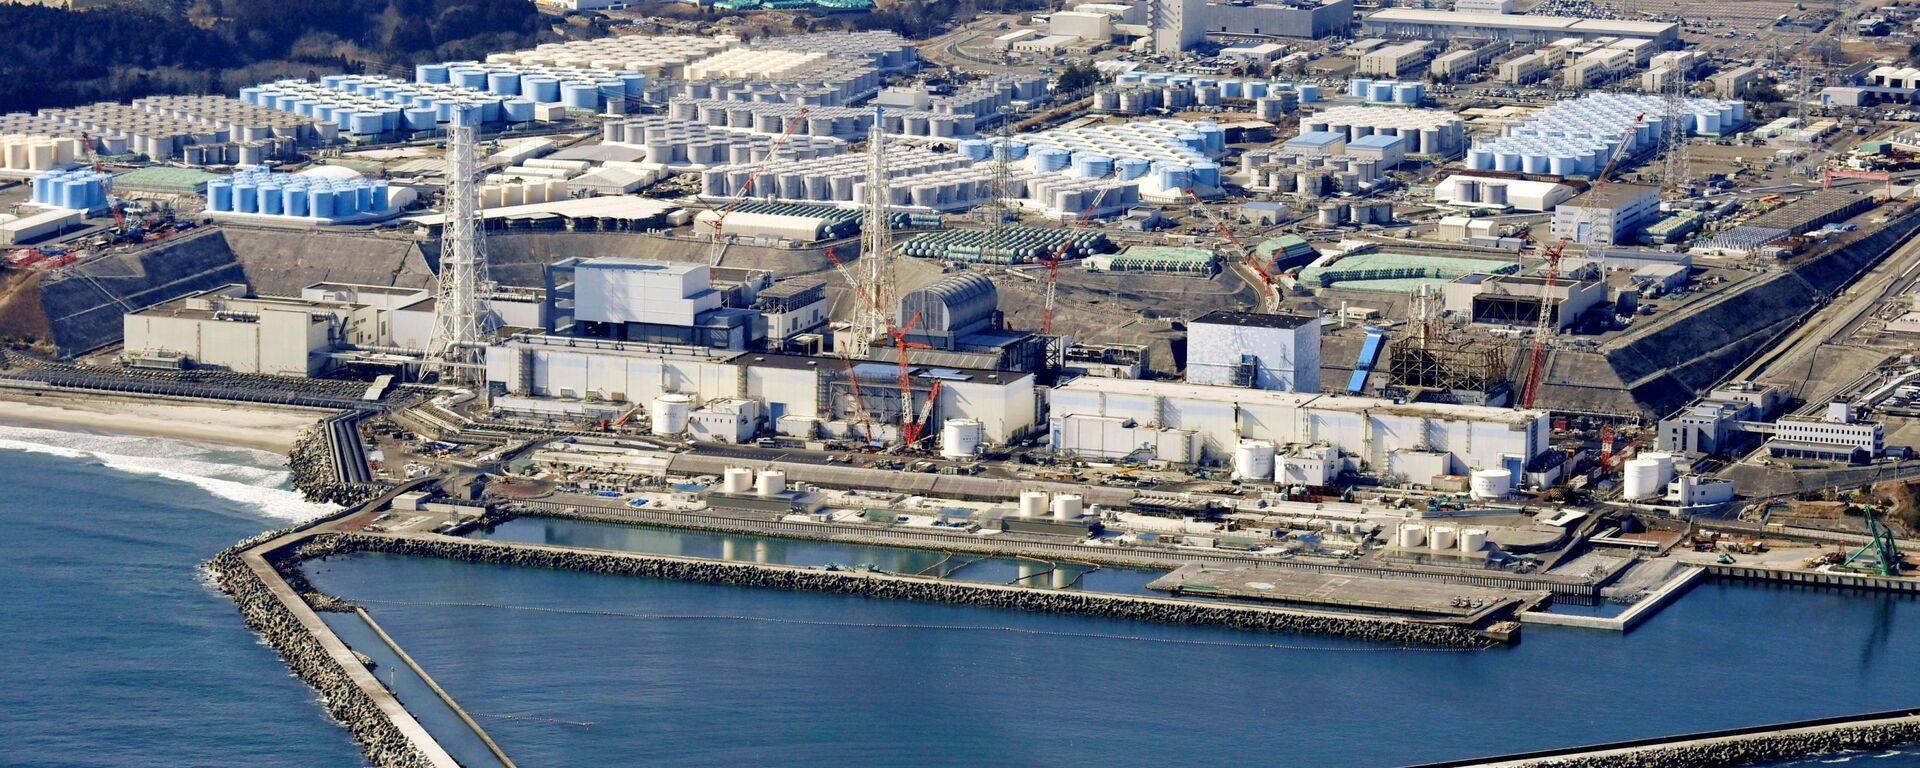 日本福島核電站燃料碎片清除難